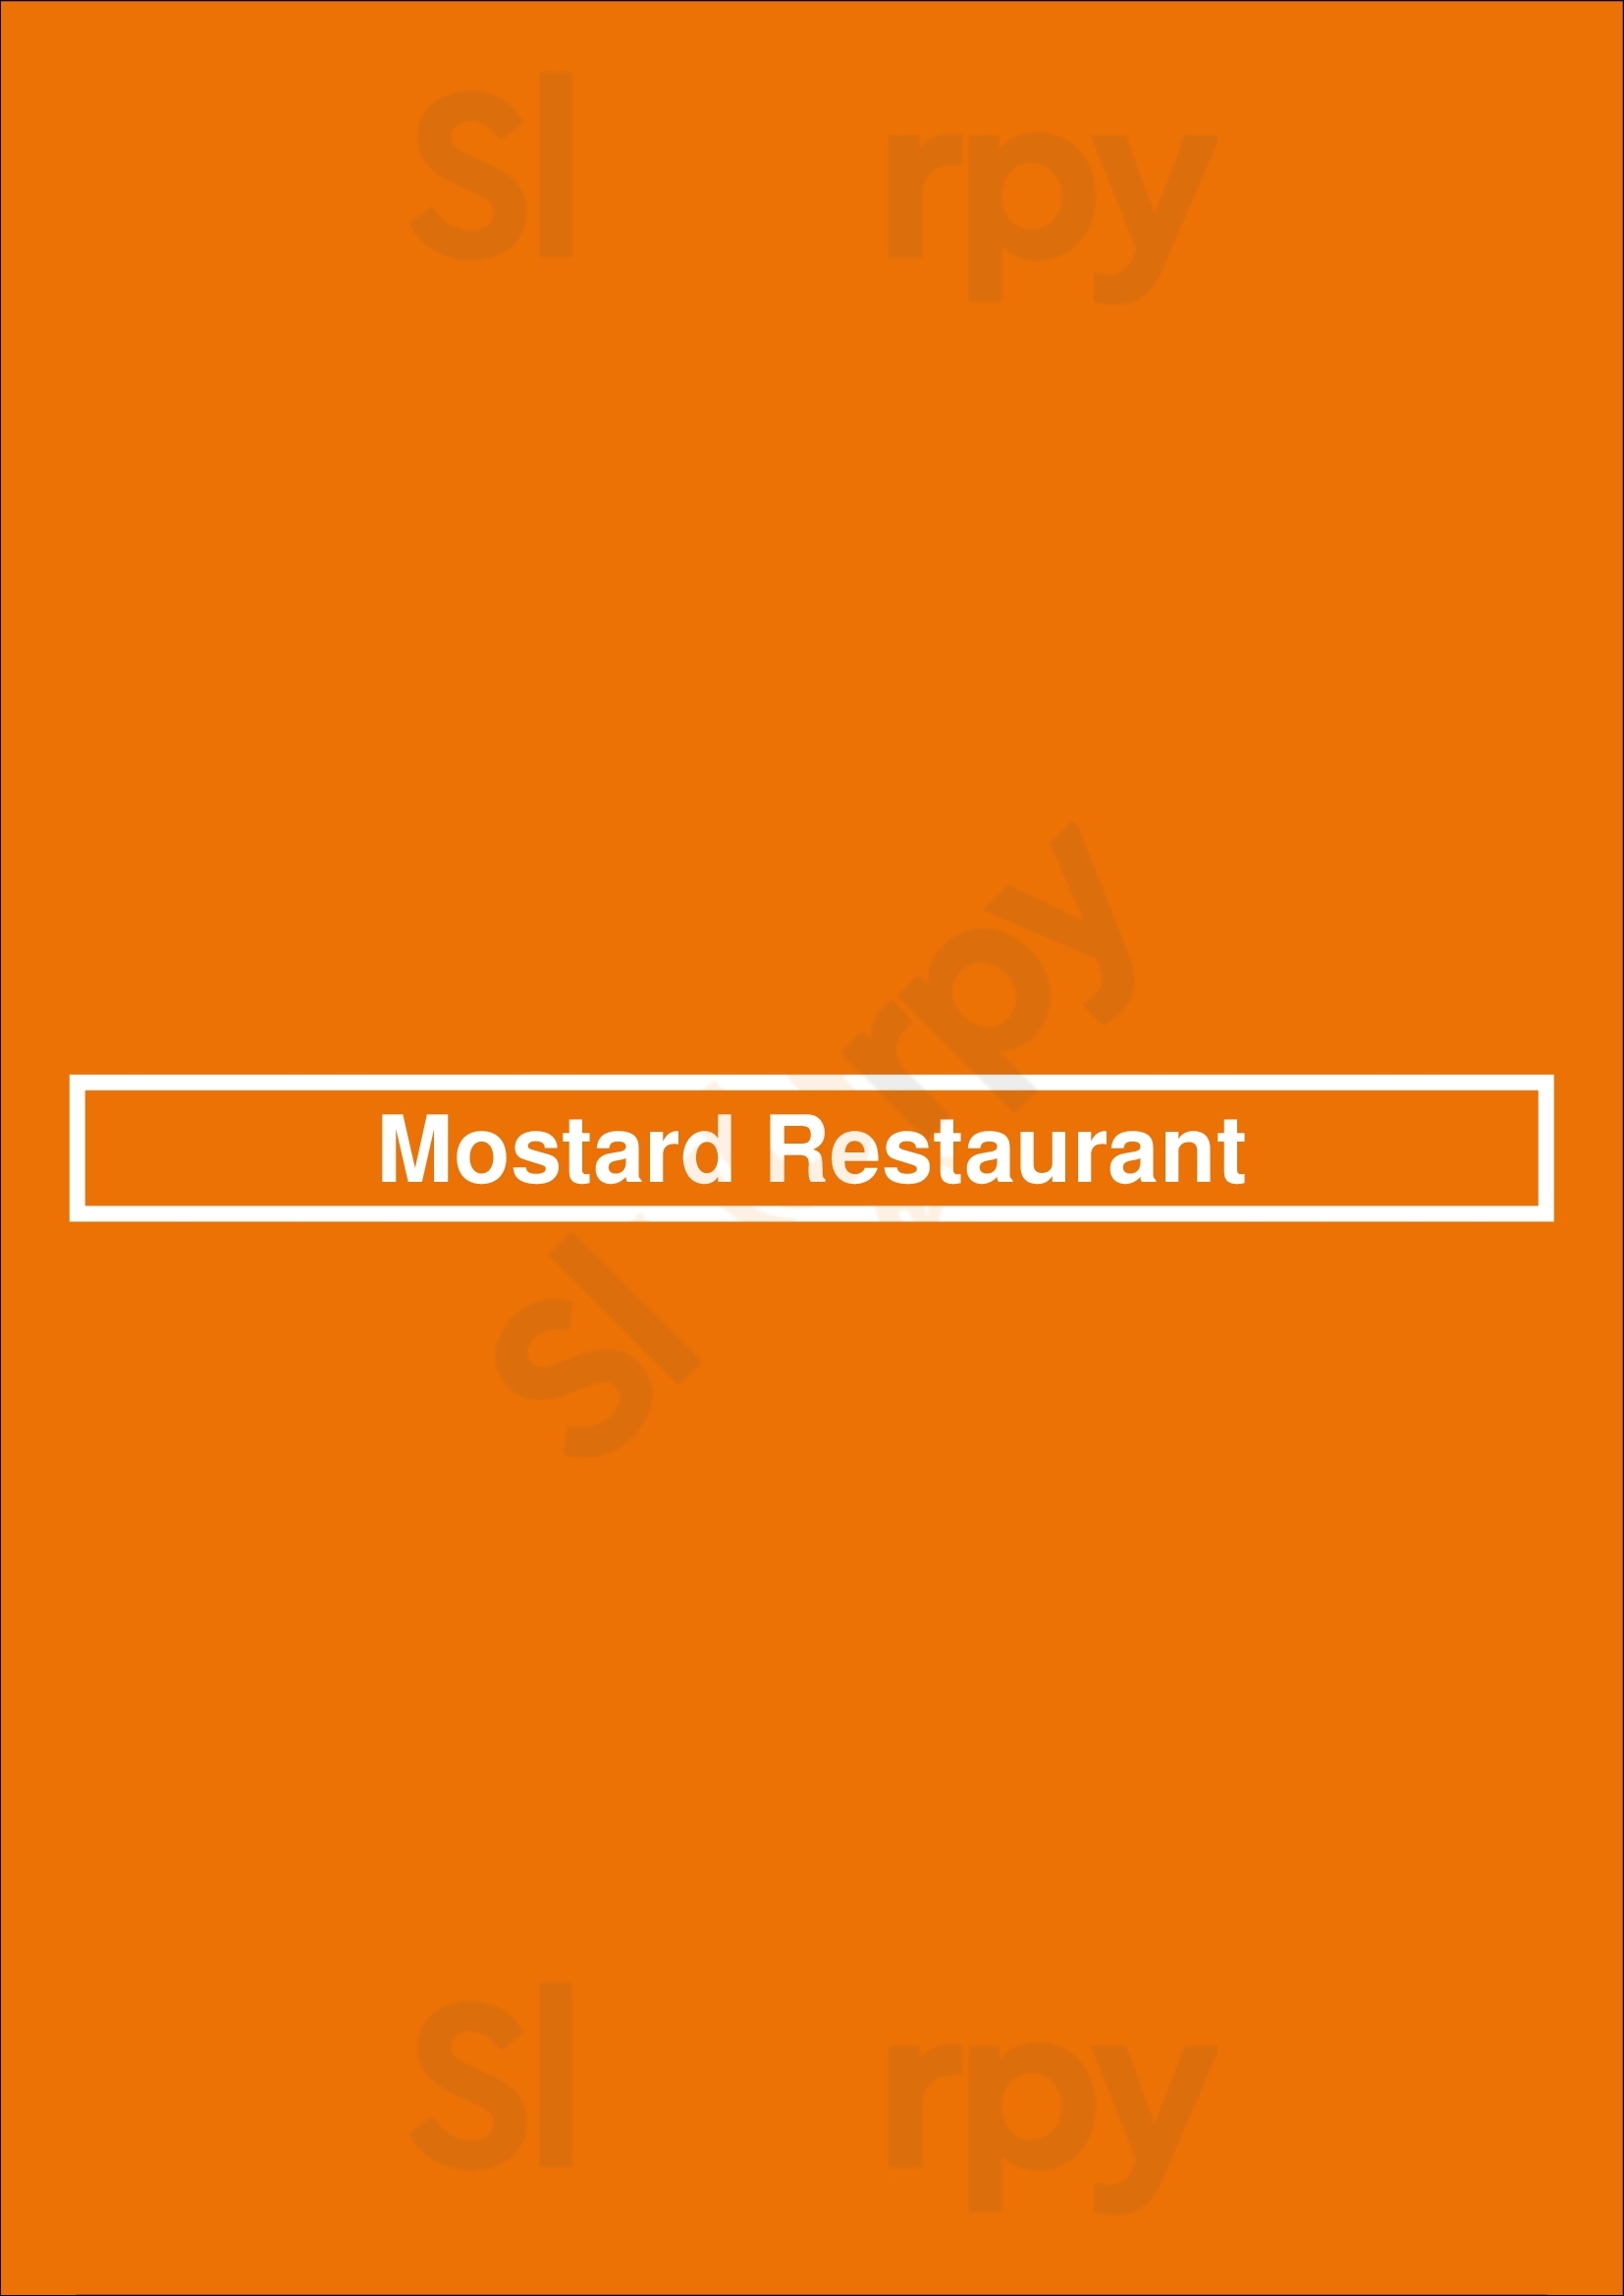 Mostard Restaurant Aachen Menu - 1